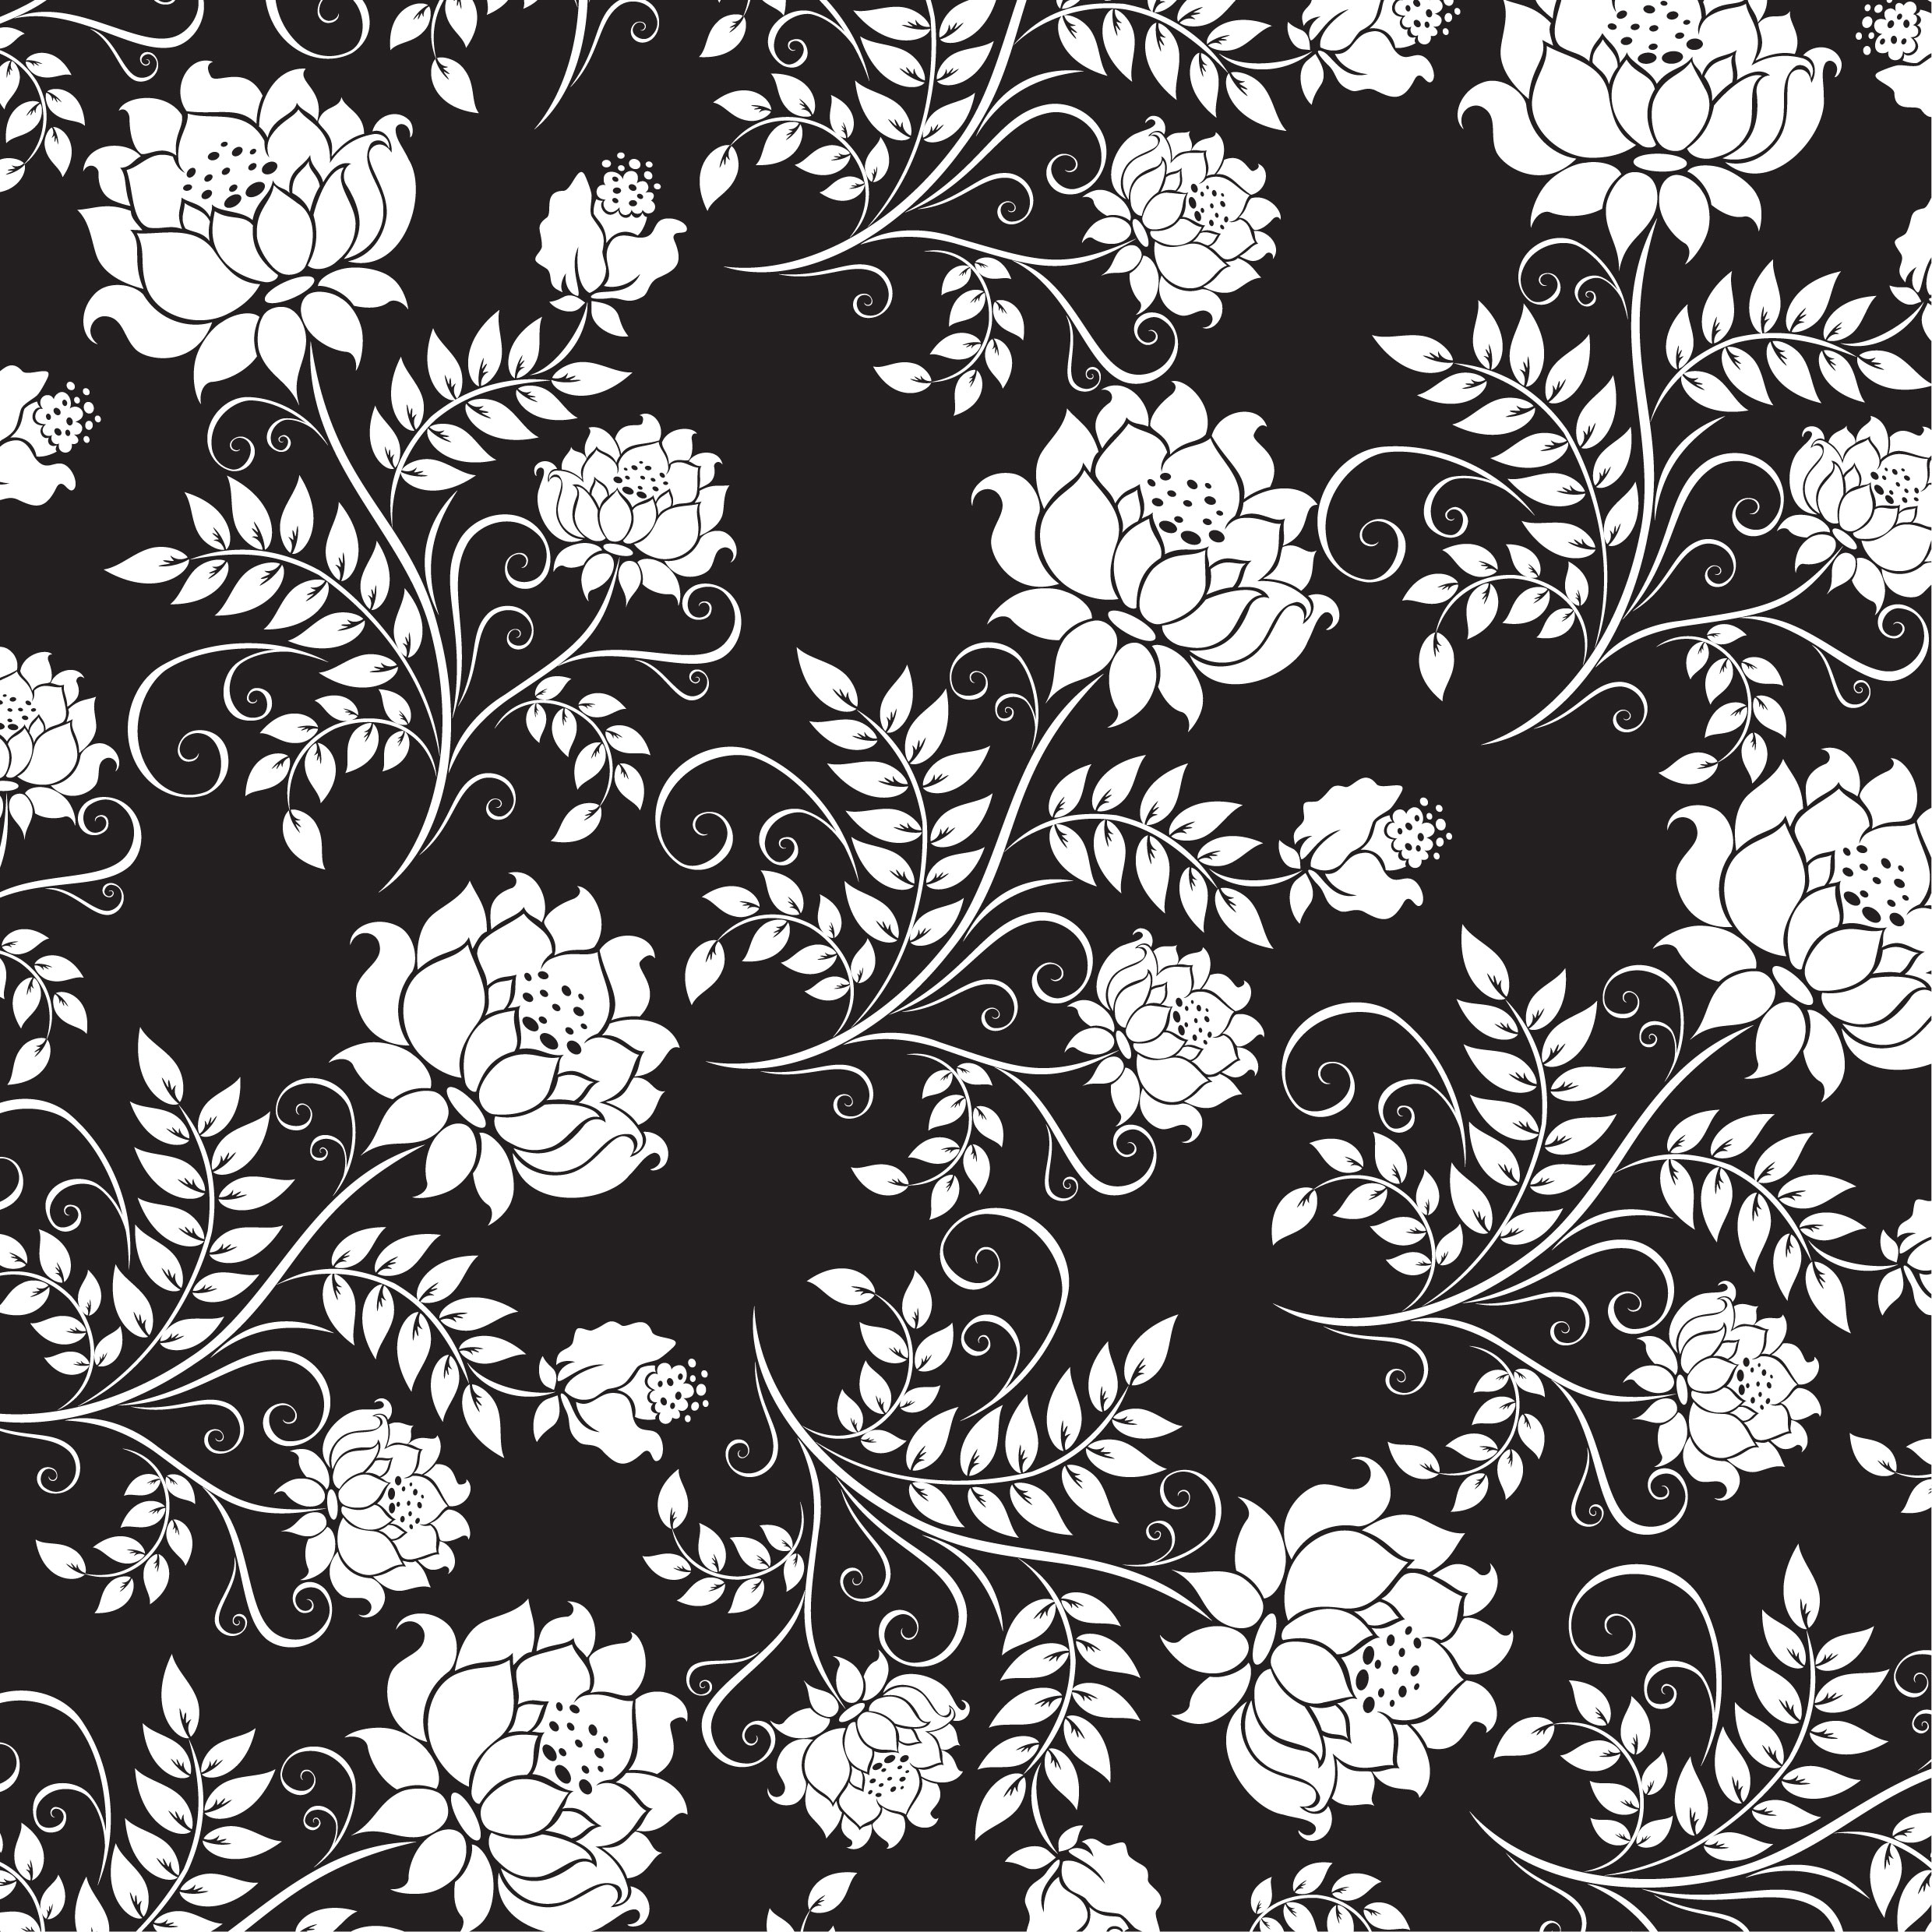 壁紙 背景イラスト 花の模様 柄 パターン No 2 白黒 茎葉